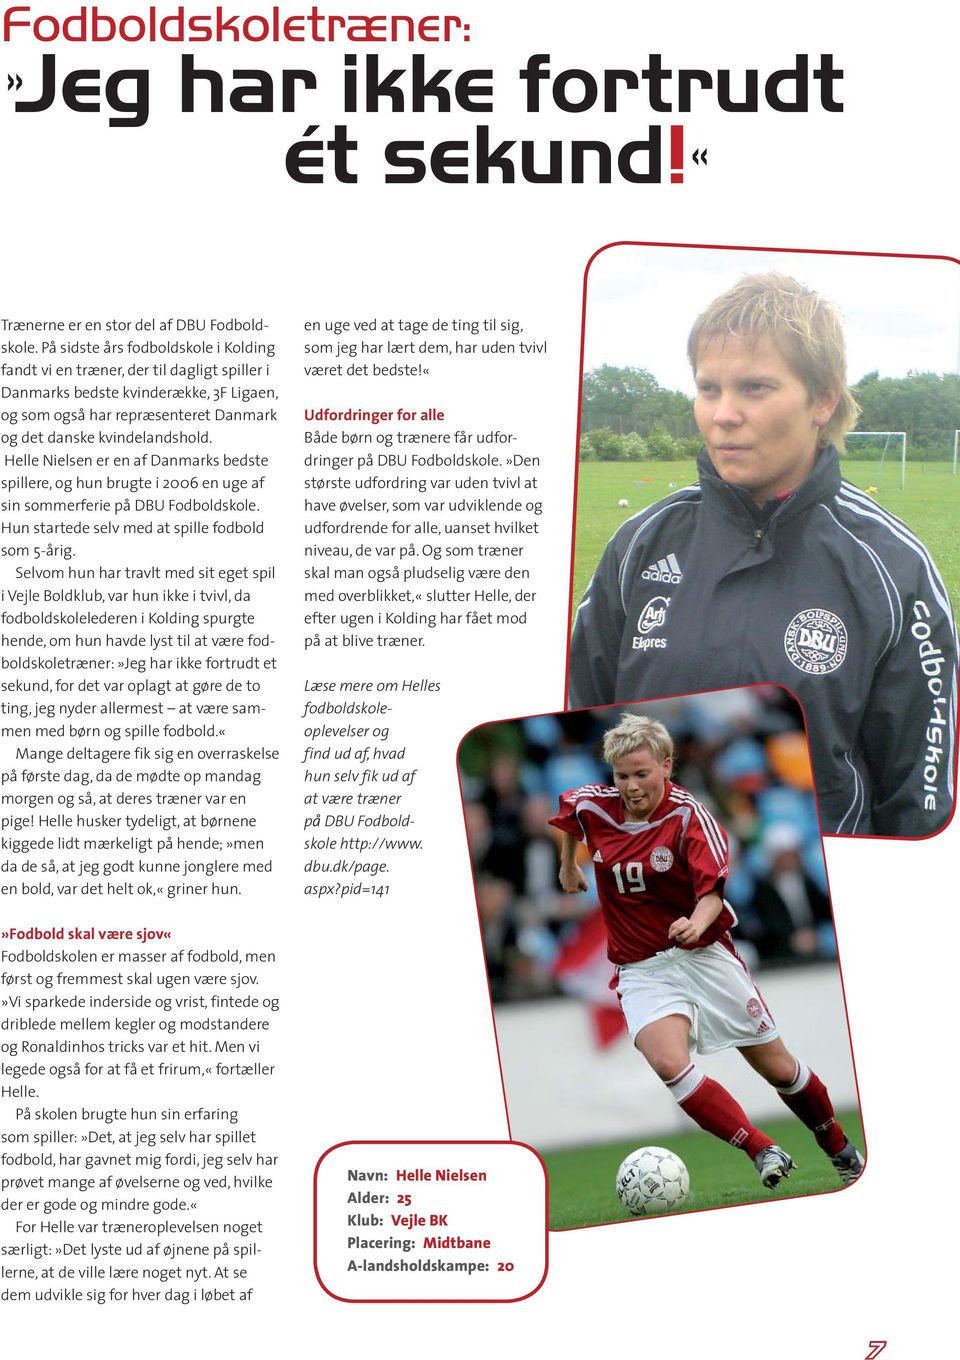 Helle Nielsen er en af Danmarks bedste spillere, og hun brugte i 2006 en uge af sin sommerferie på DBU Fodboldskole. Hun startede selv med at spille fodbold som 5-årig.